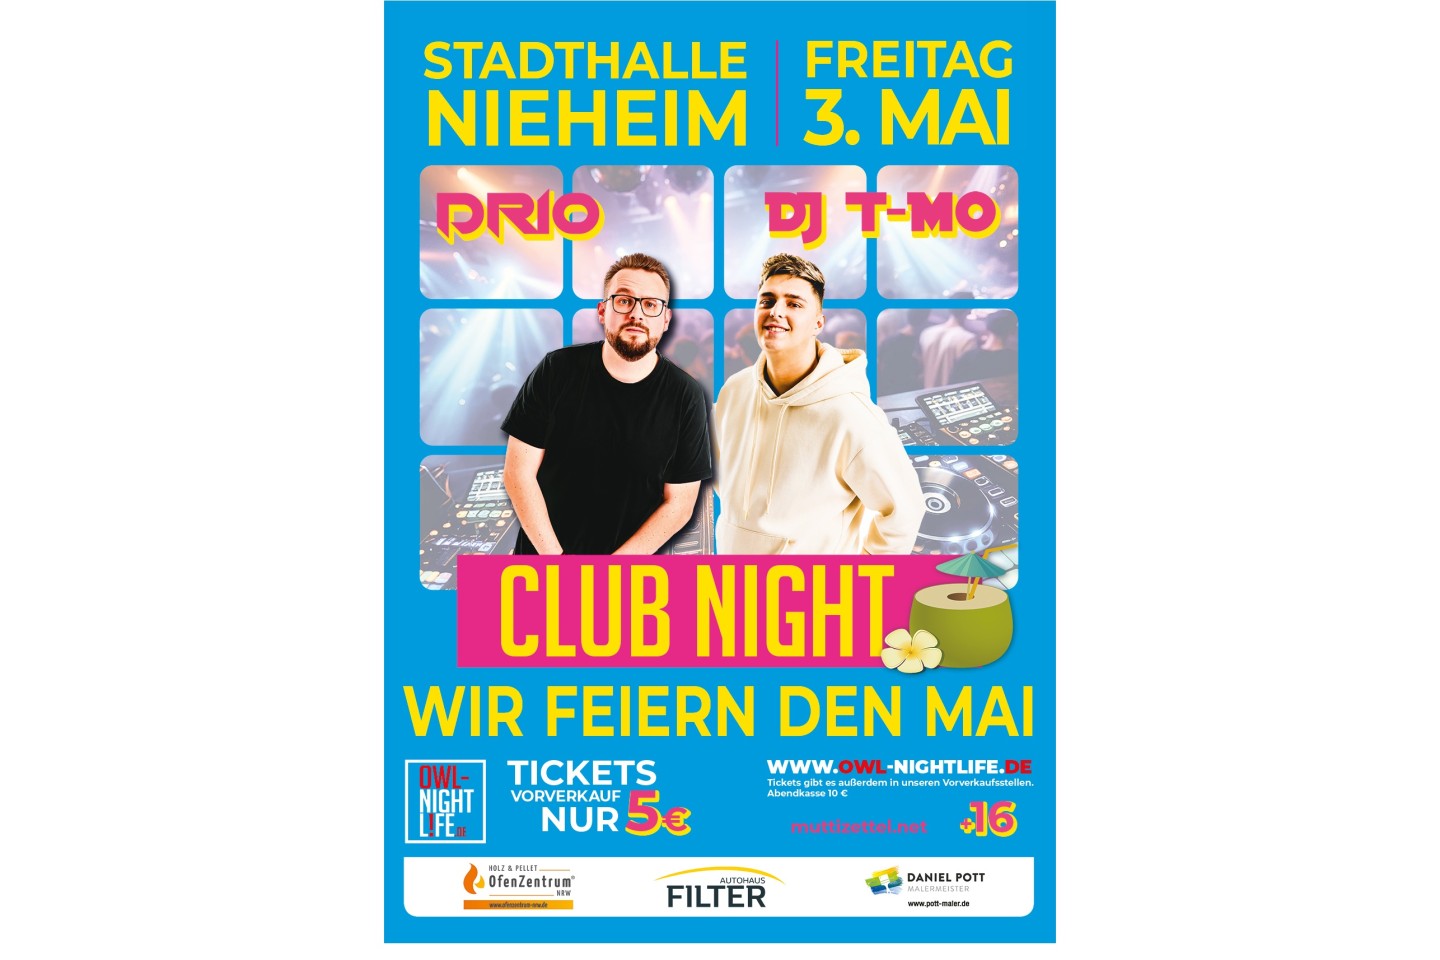 Am Freitag, dem 3. Mai findet ab 21 Uhr Uhr die Club Night „Wir feiern den Mai“ statt. DJ Drio  und DJ T-Mo (beide u.a. aus dem Café Europa /Bielefeld und dem Hermanns Club / Detmold) werden hier die 